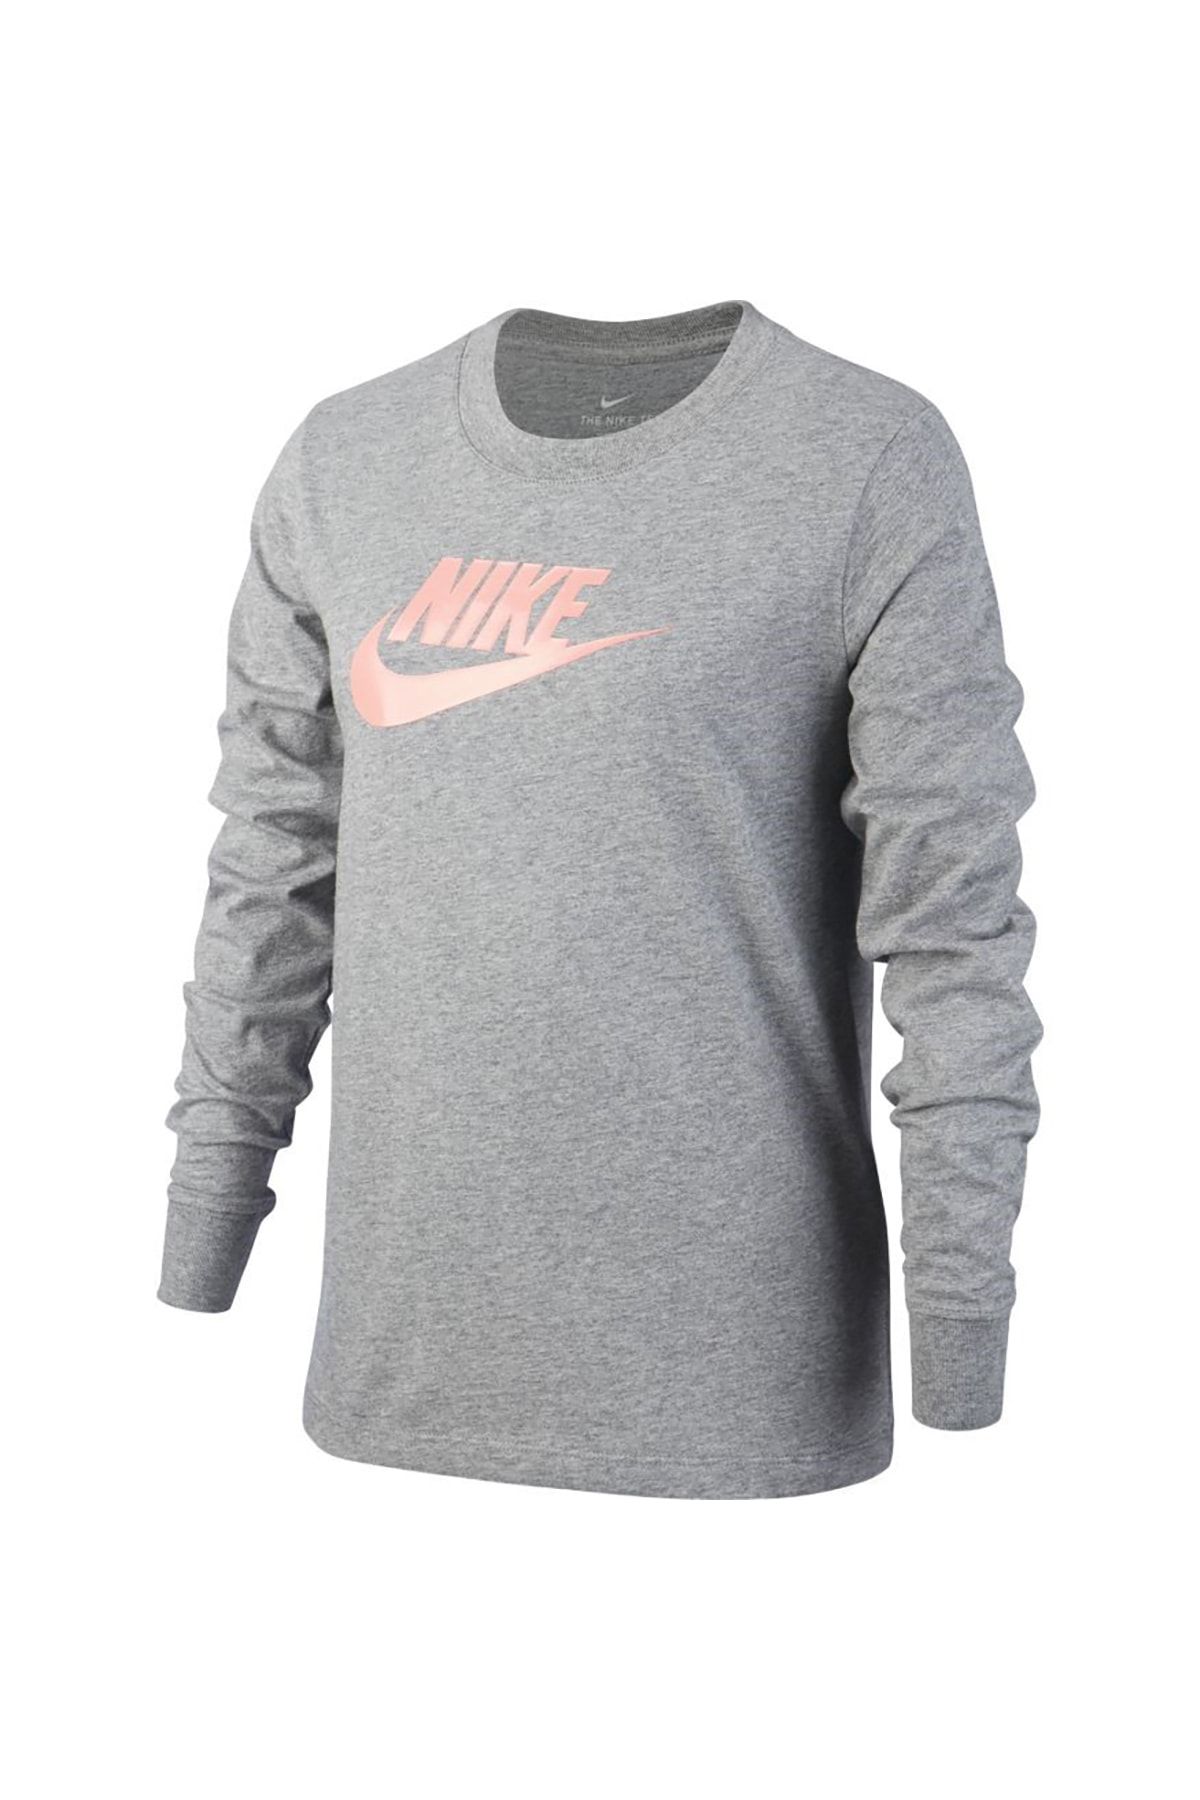 Nike Unisex Sweatshirt  - CI8295-091